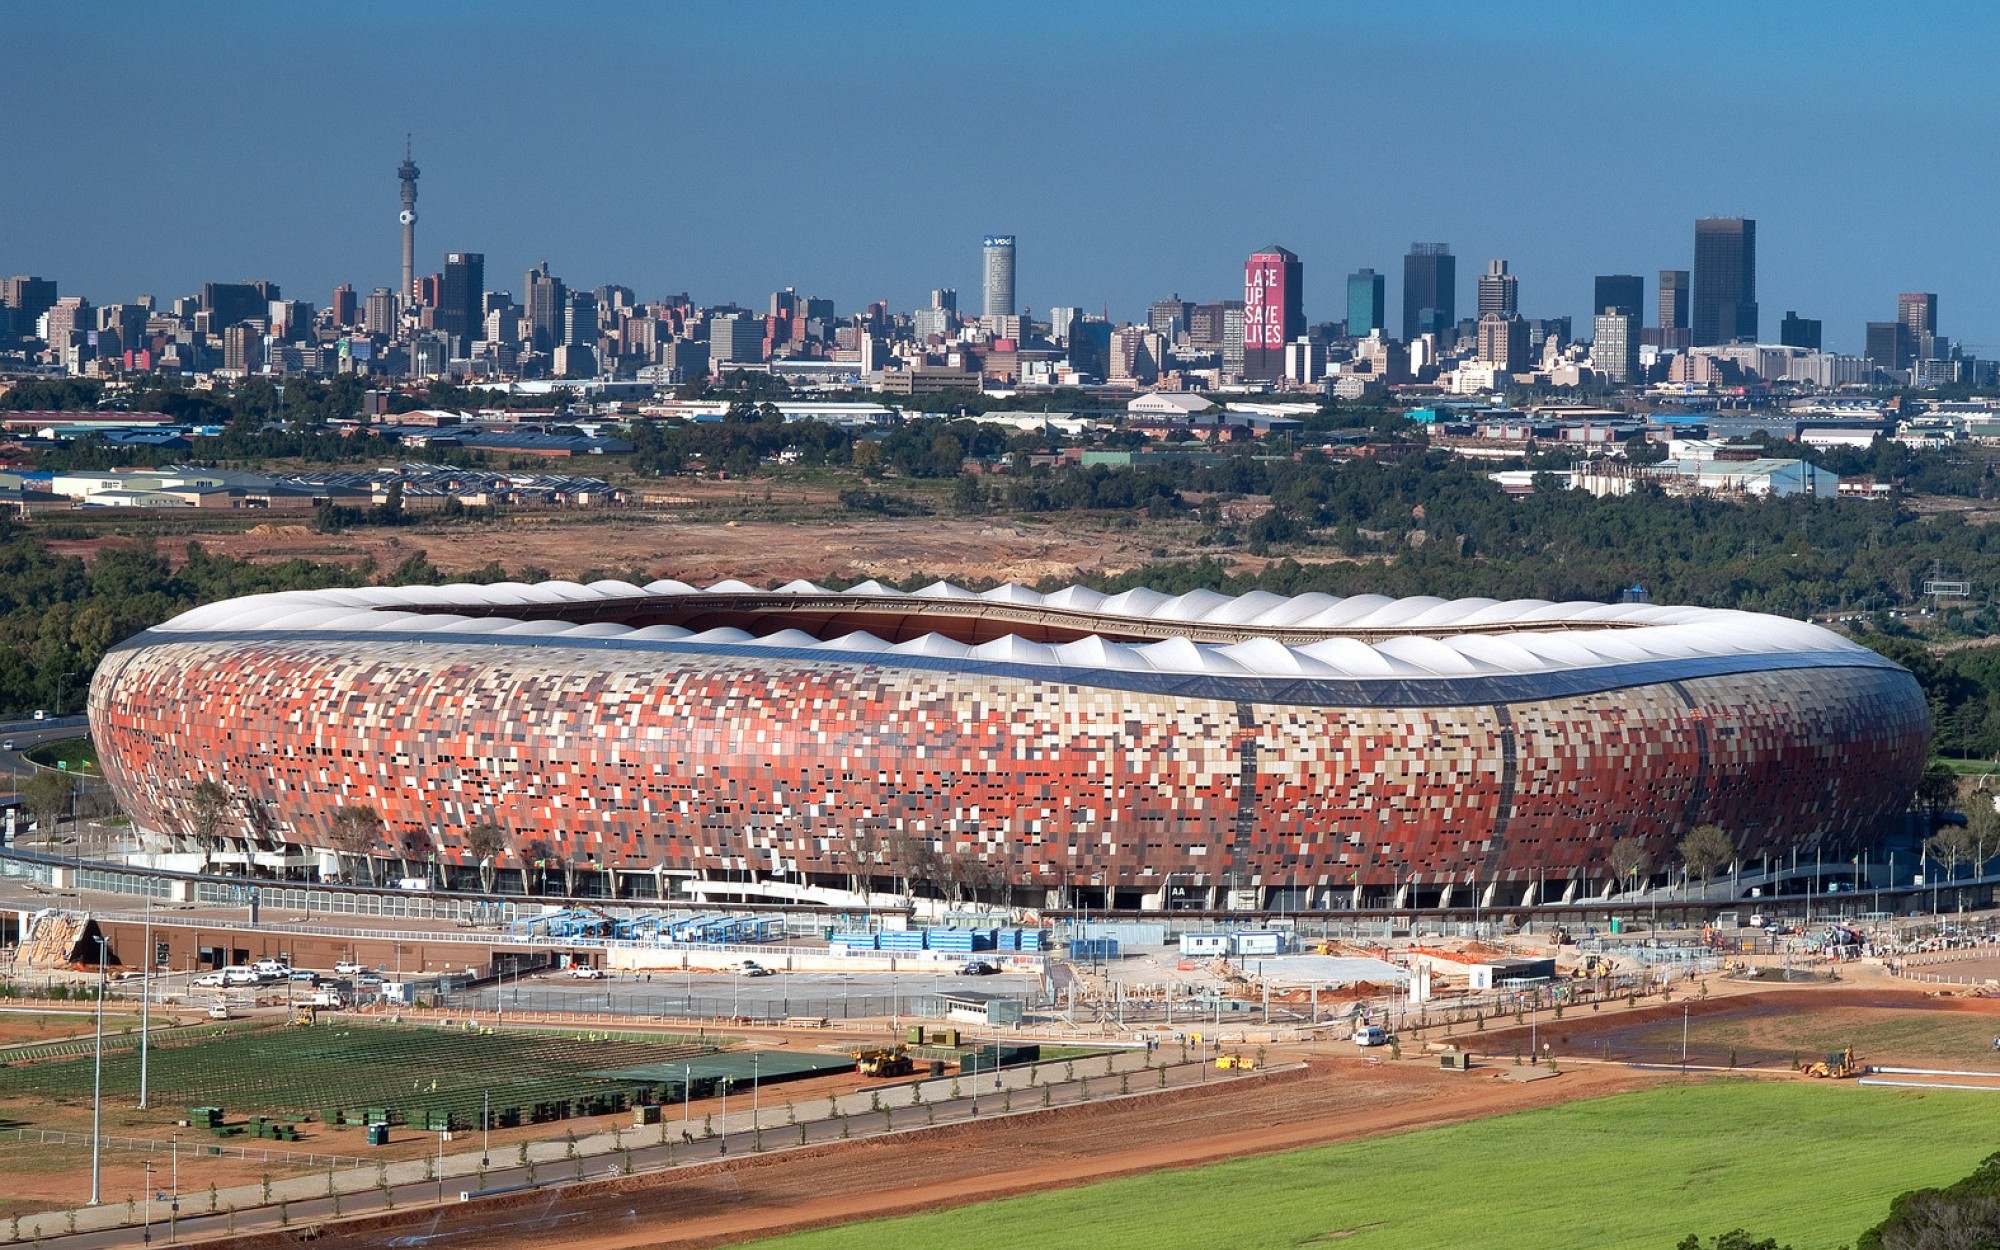 City stadium. СОККЕР Сити Йоханнесбург. СОККЕР Сити стадион ЮАР. СОККЕР Сити — Йоханнесбург, ЮАР. Стадион СОККЕР Сити Йоханнесбург.